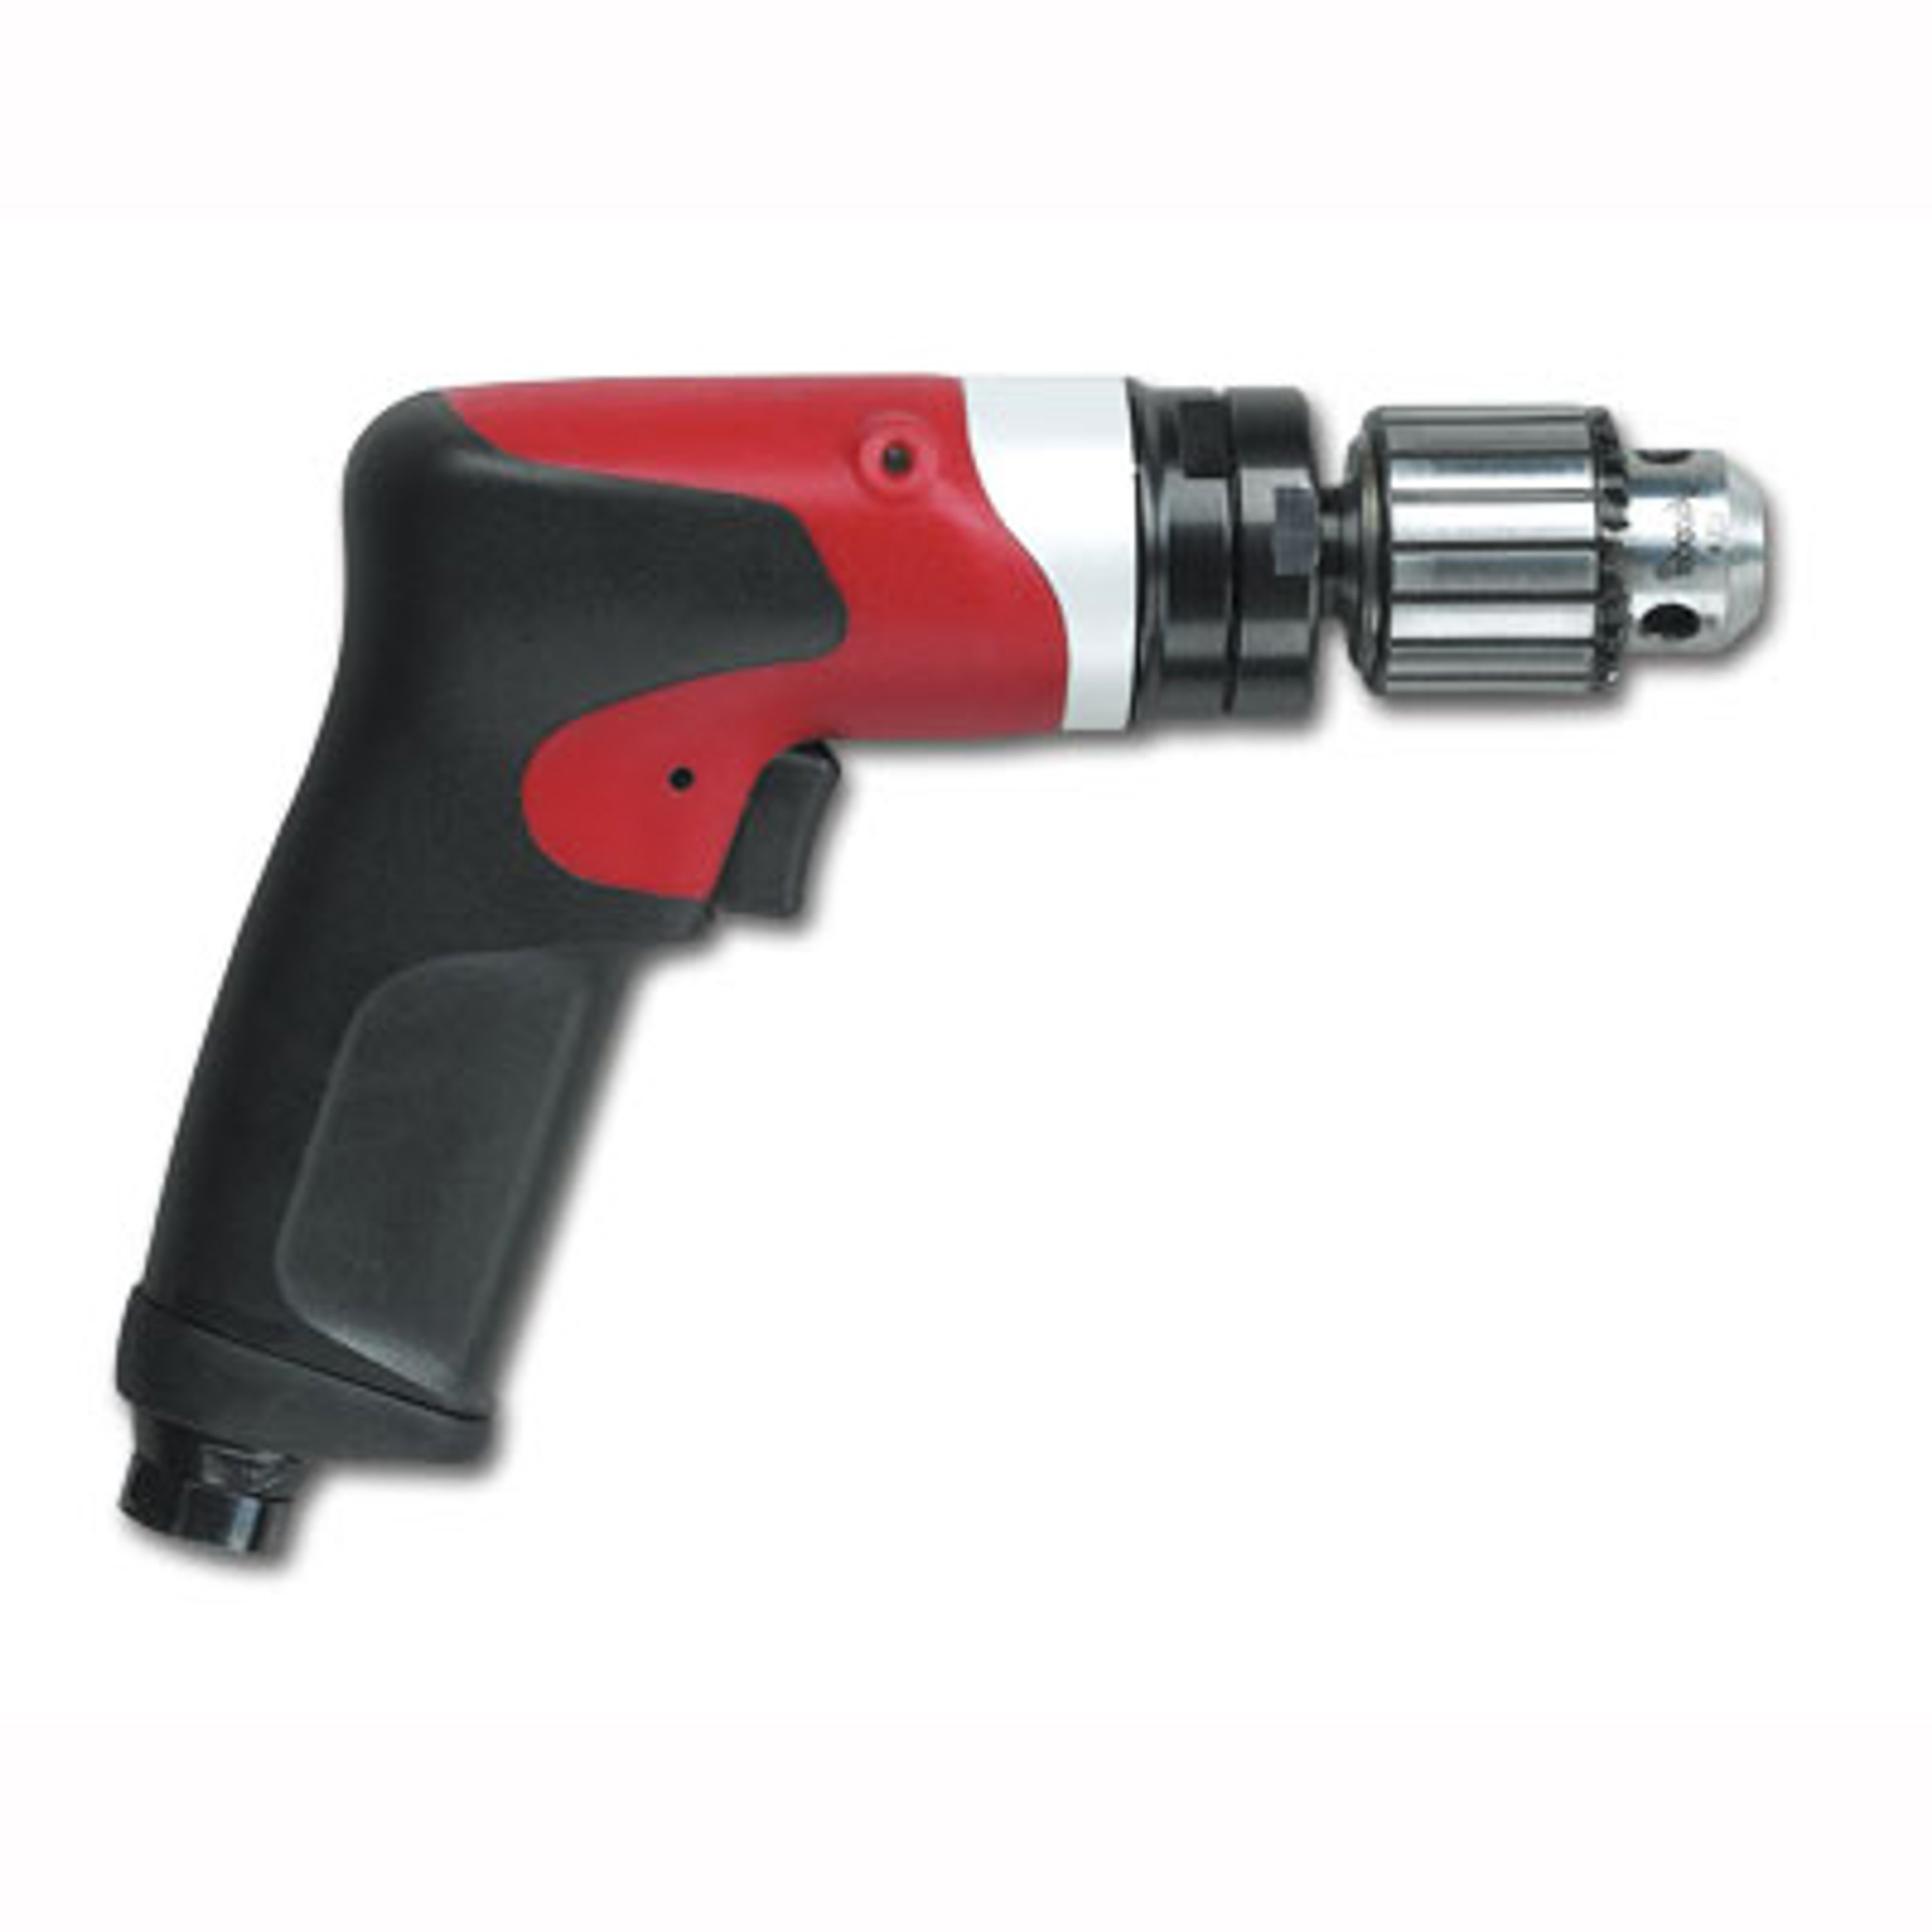 1465104 - Desoutter Pistol Grip Pneumatic Drill